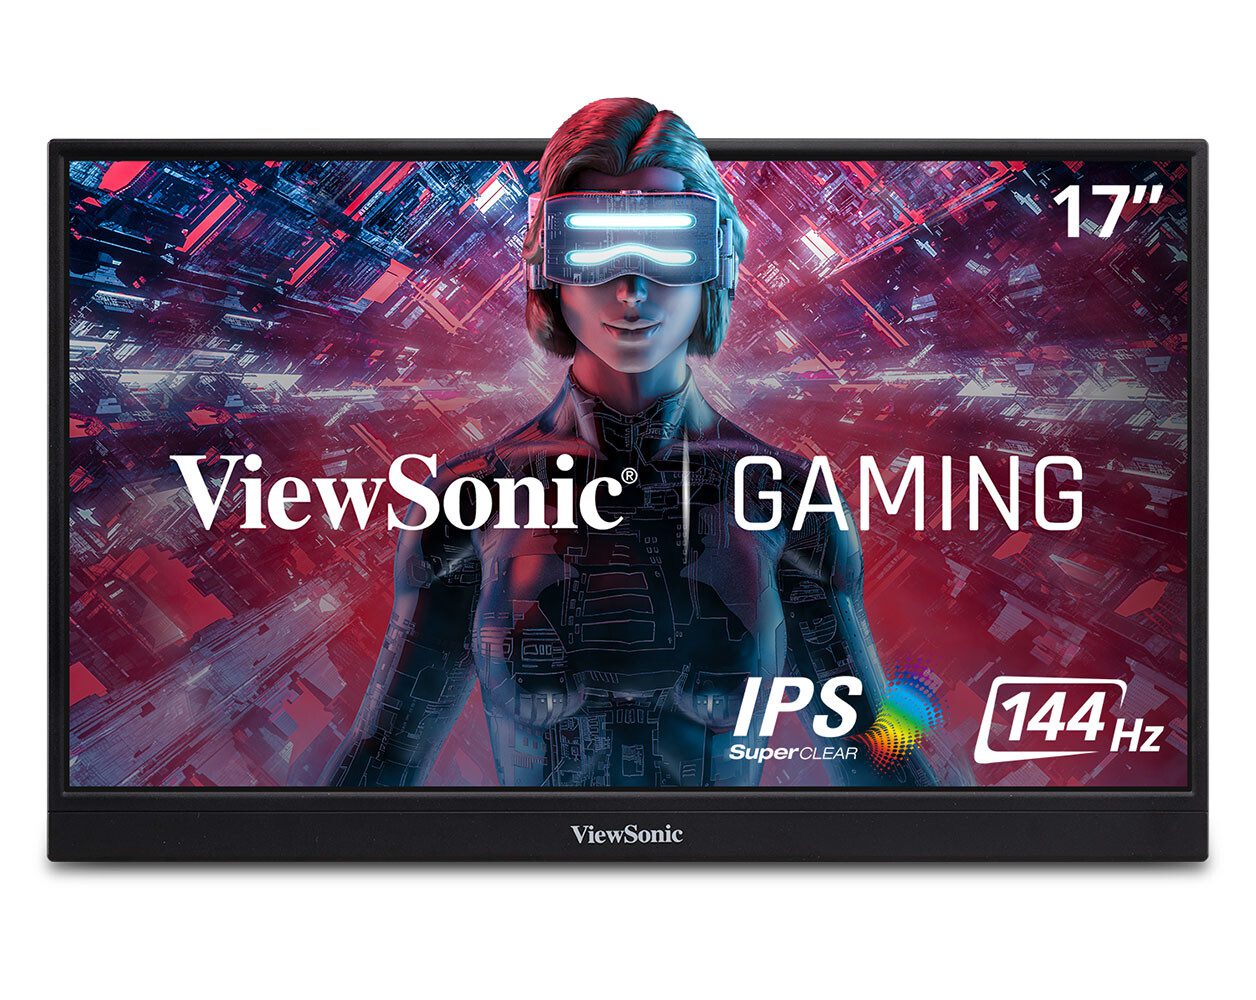 ViewSonic introducerar 17″ bärbar skärm för smartphones, PC och konsoler